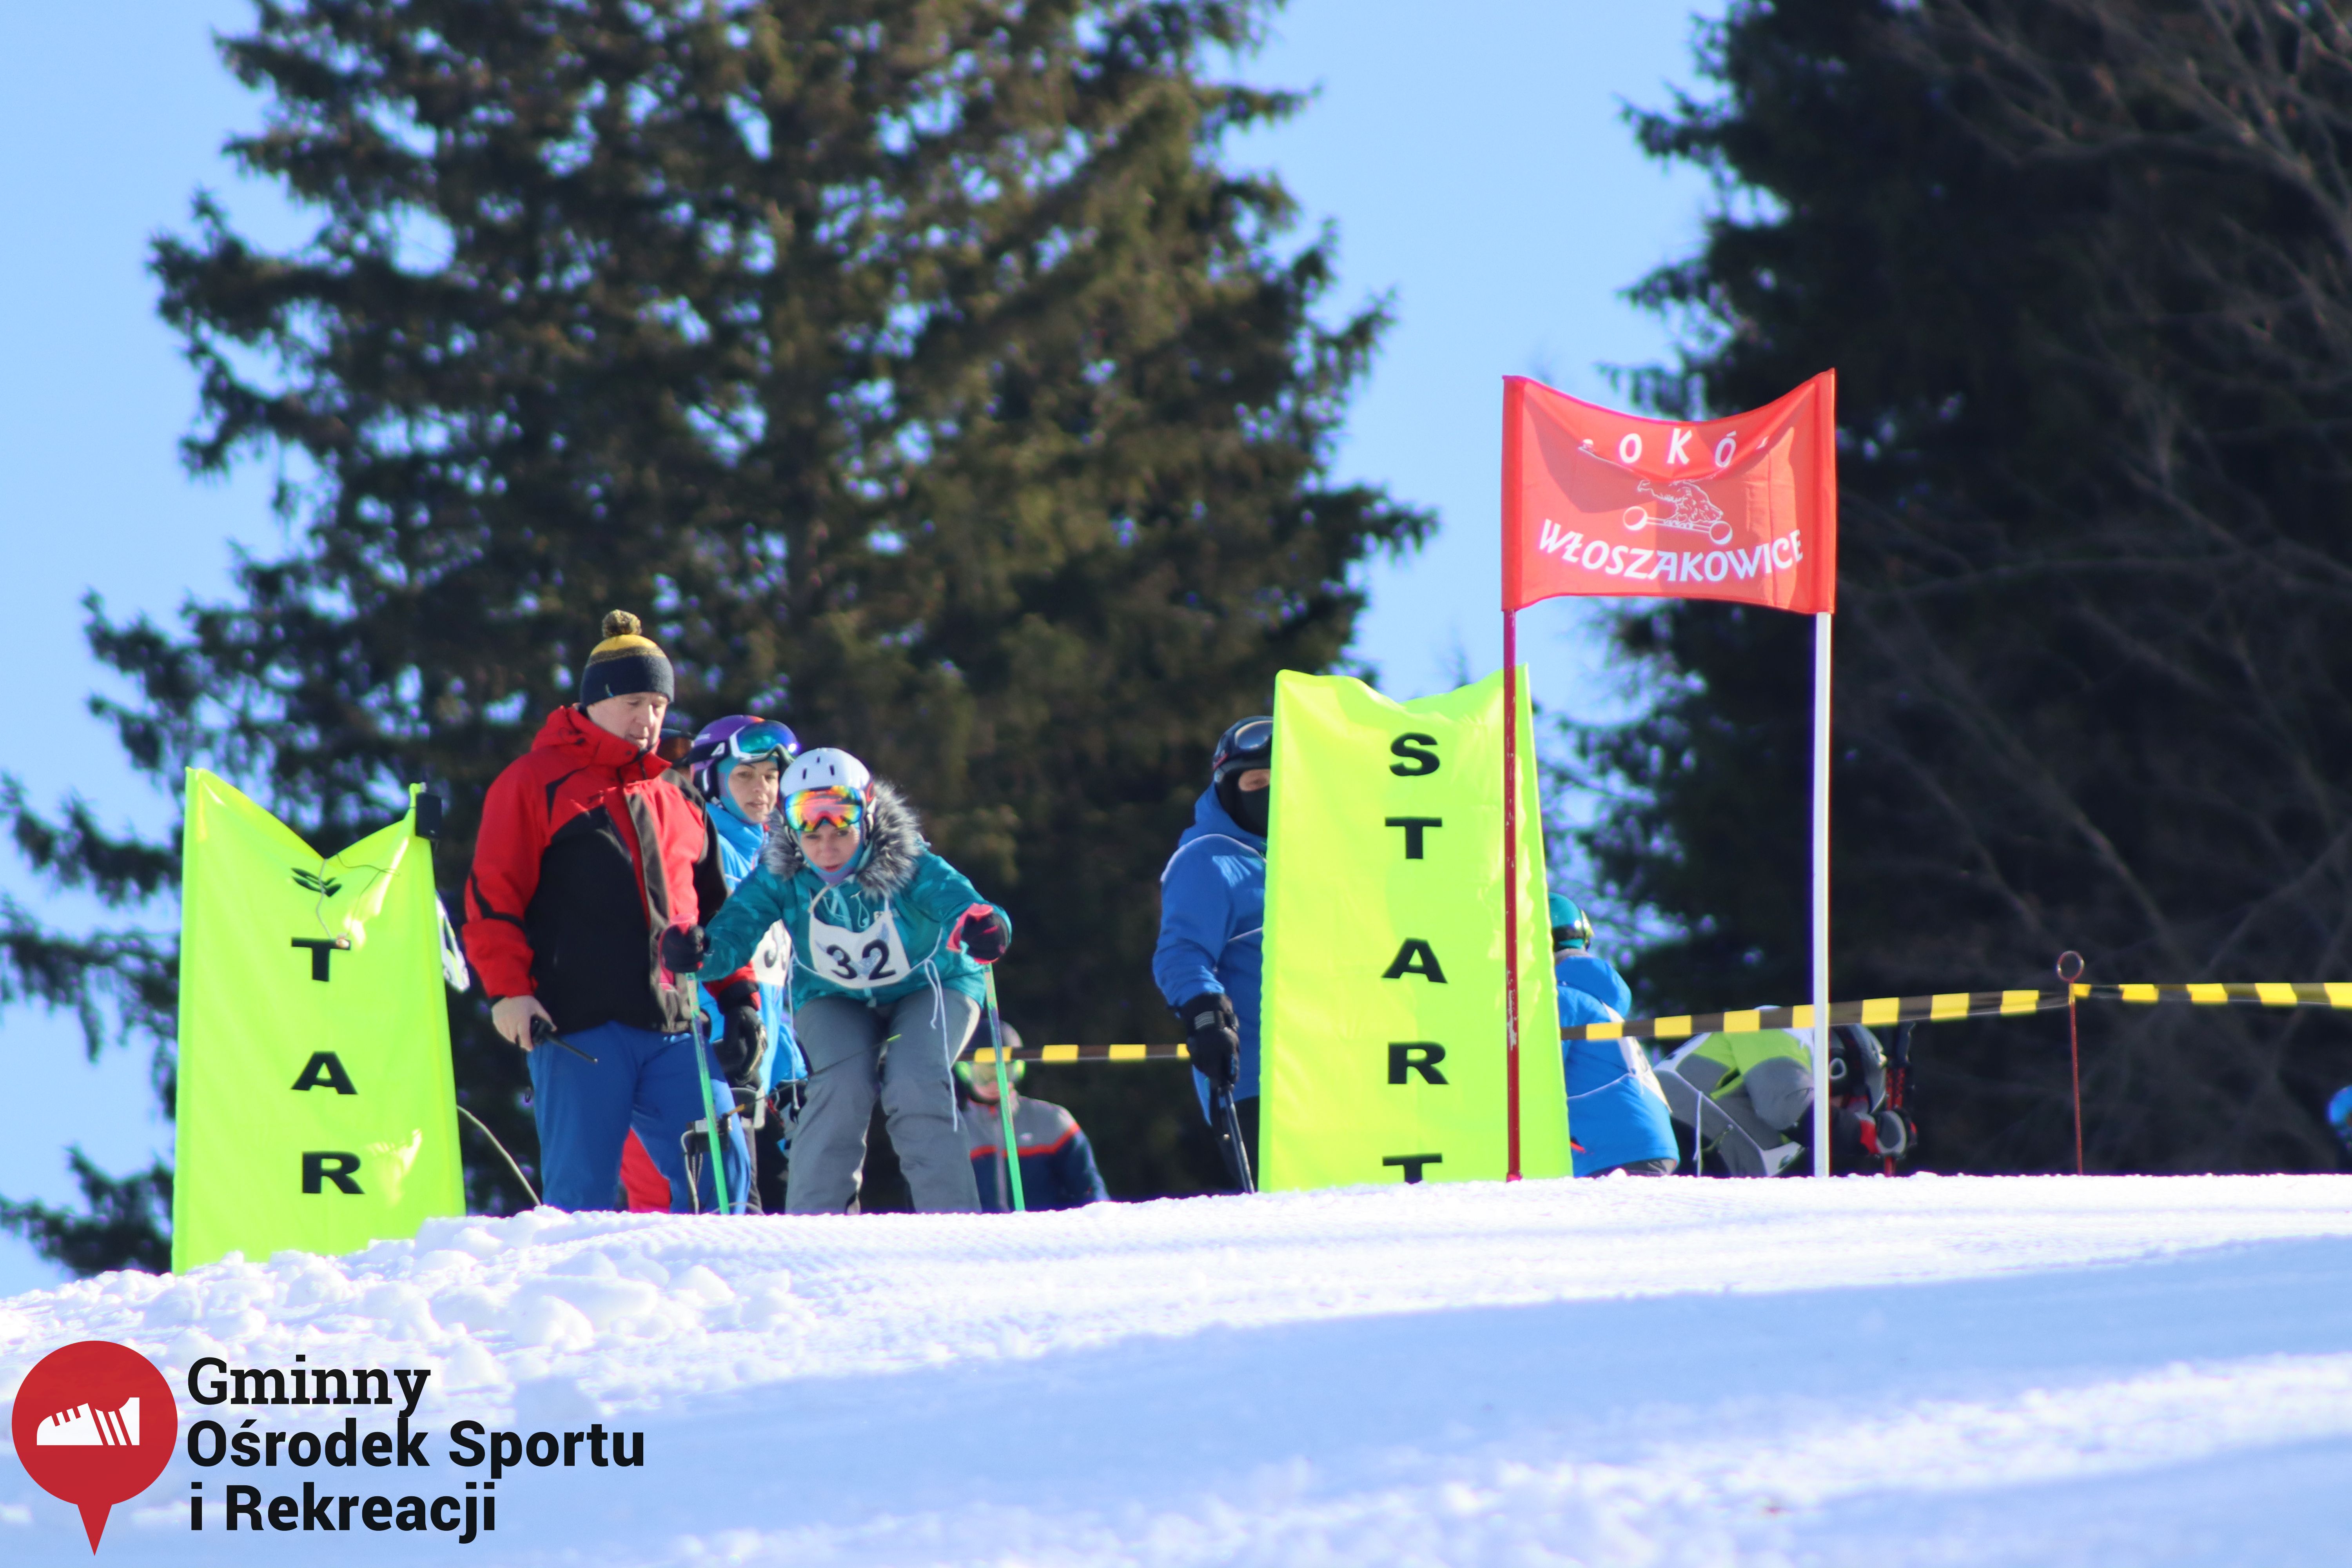 2022.02.12 - 18. Mistrzostwa Gminy Woszakowice w narciarstwie035.jpg - 1,54 MB